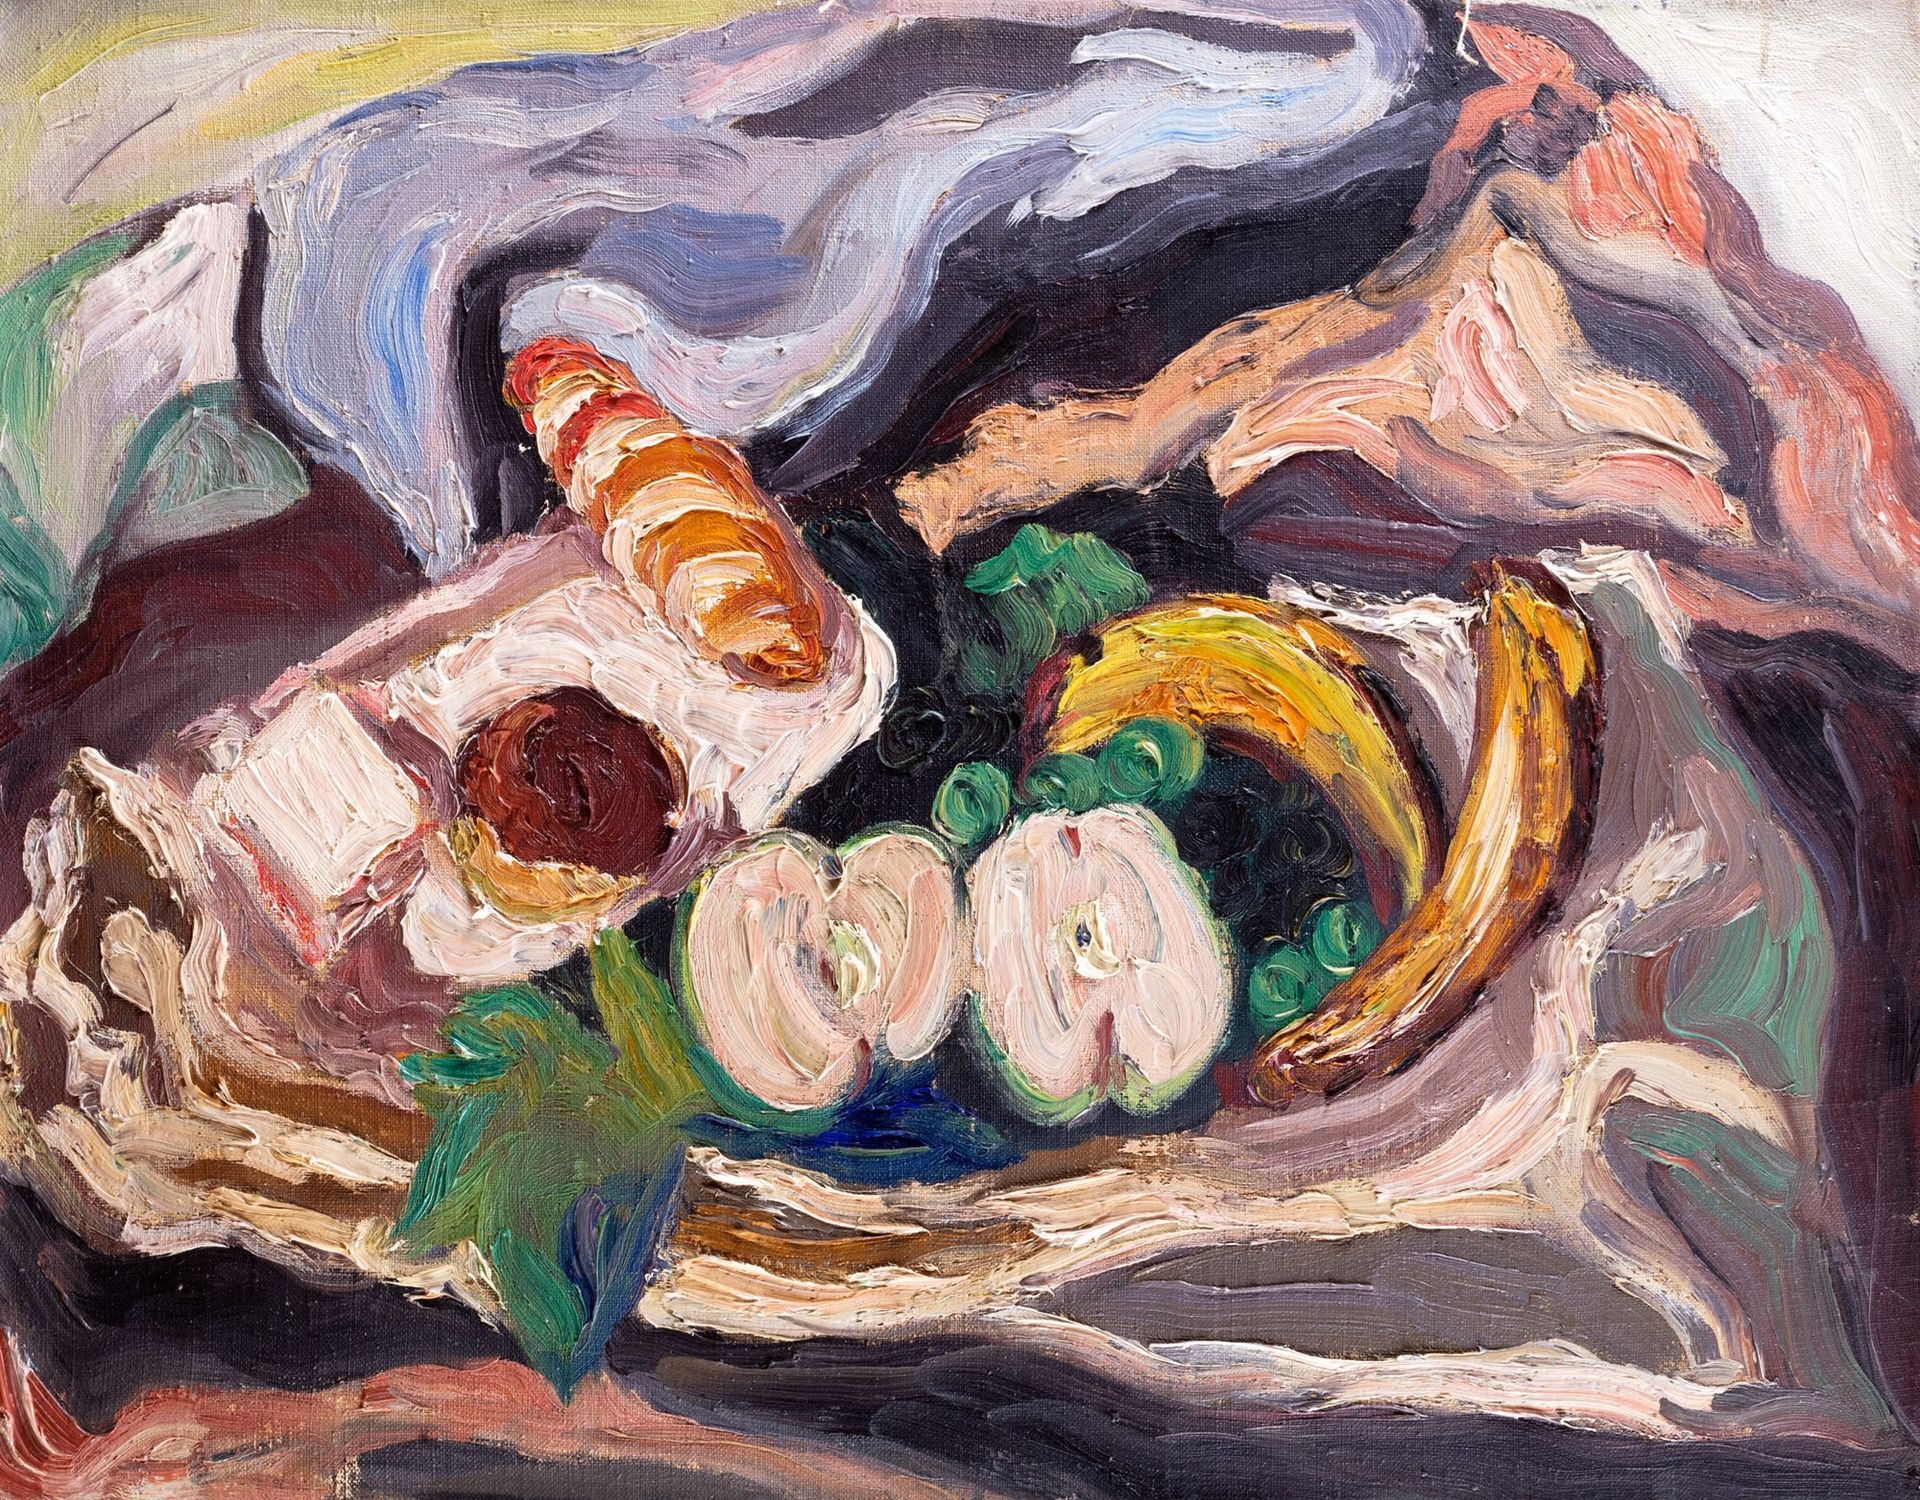 CARLO LEVI Nature morte avec fruits et bonbons, 1933

huile sur toile
50 x 65 cm&hellip;